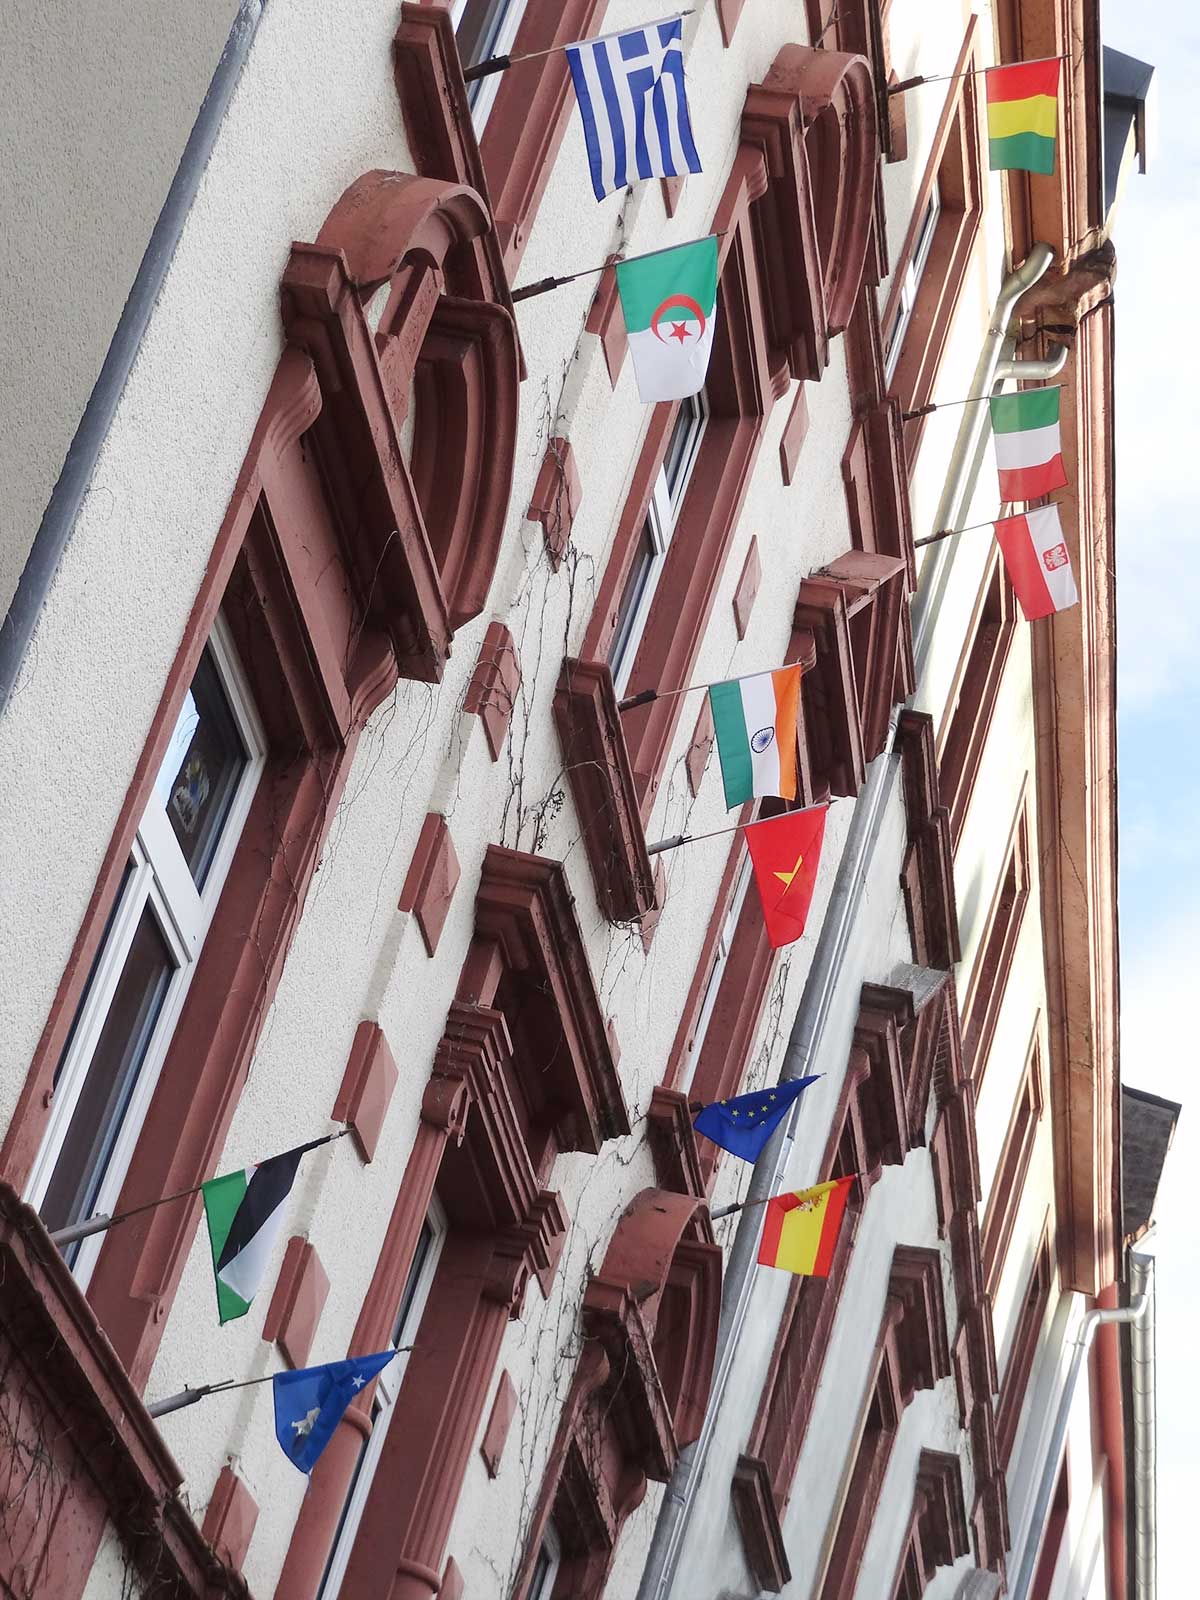 Internationales Familienzentrum in Frankfurt mit Flaggen an Fenstern